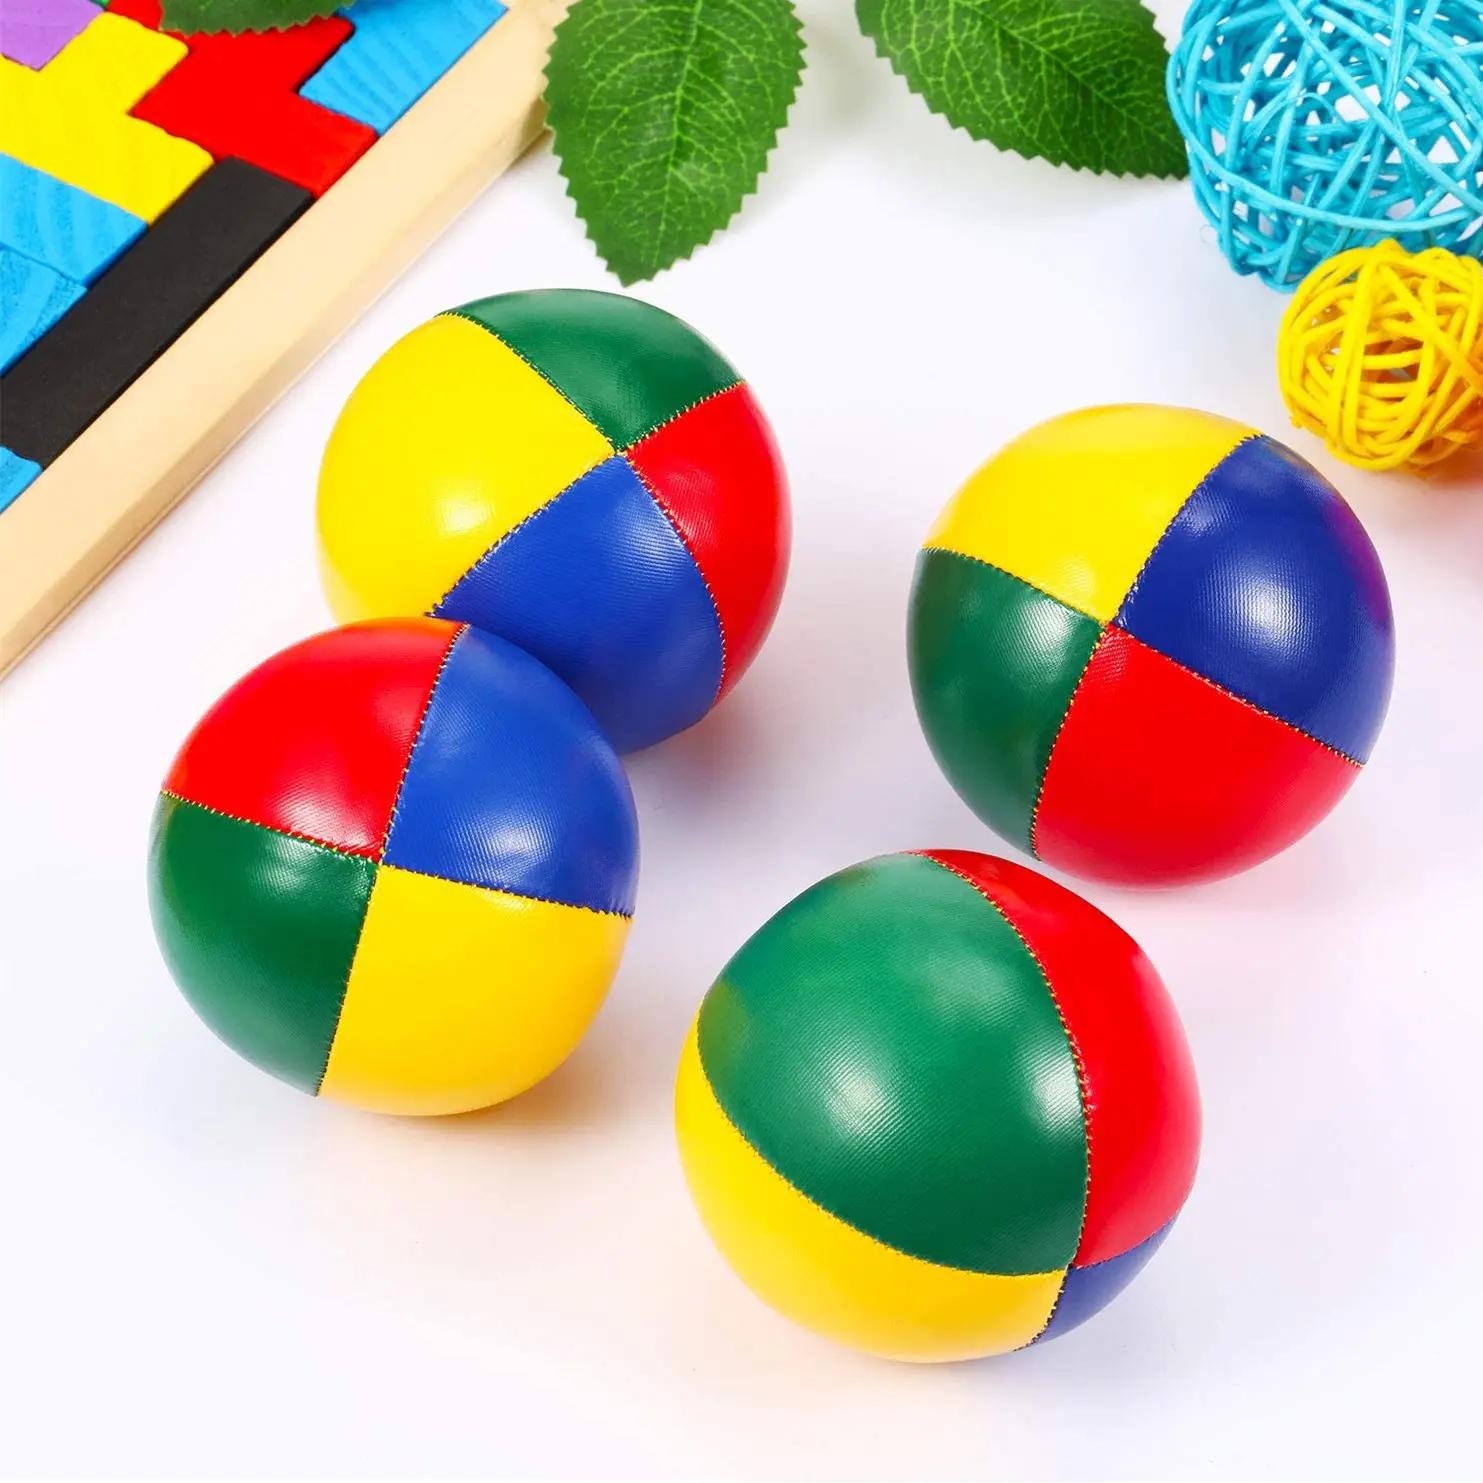 Nouveau design de balles de jonglage durables en cuir Pu souple personnalisées et colorées emballées ensemble de balles de jonglage jeux amusants pour adultes et enfants